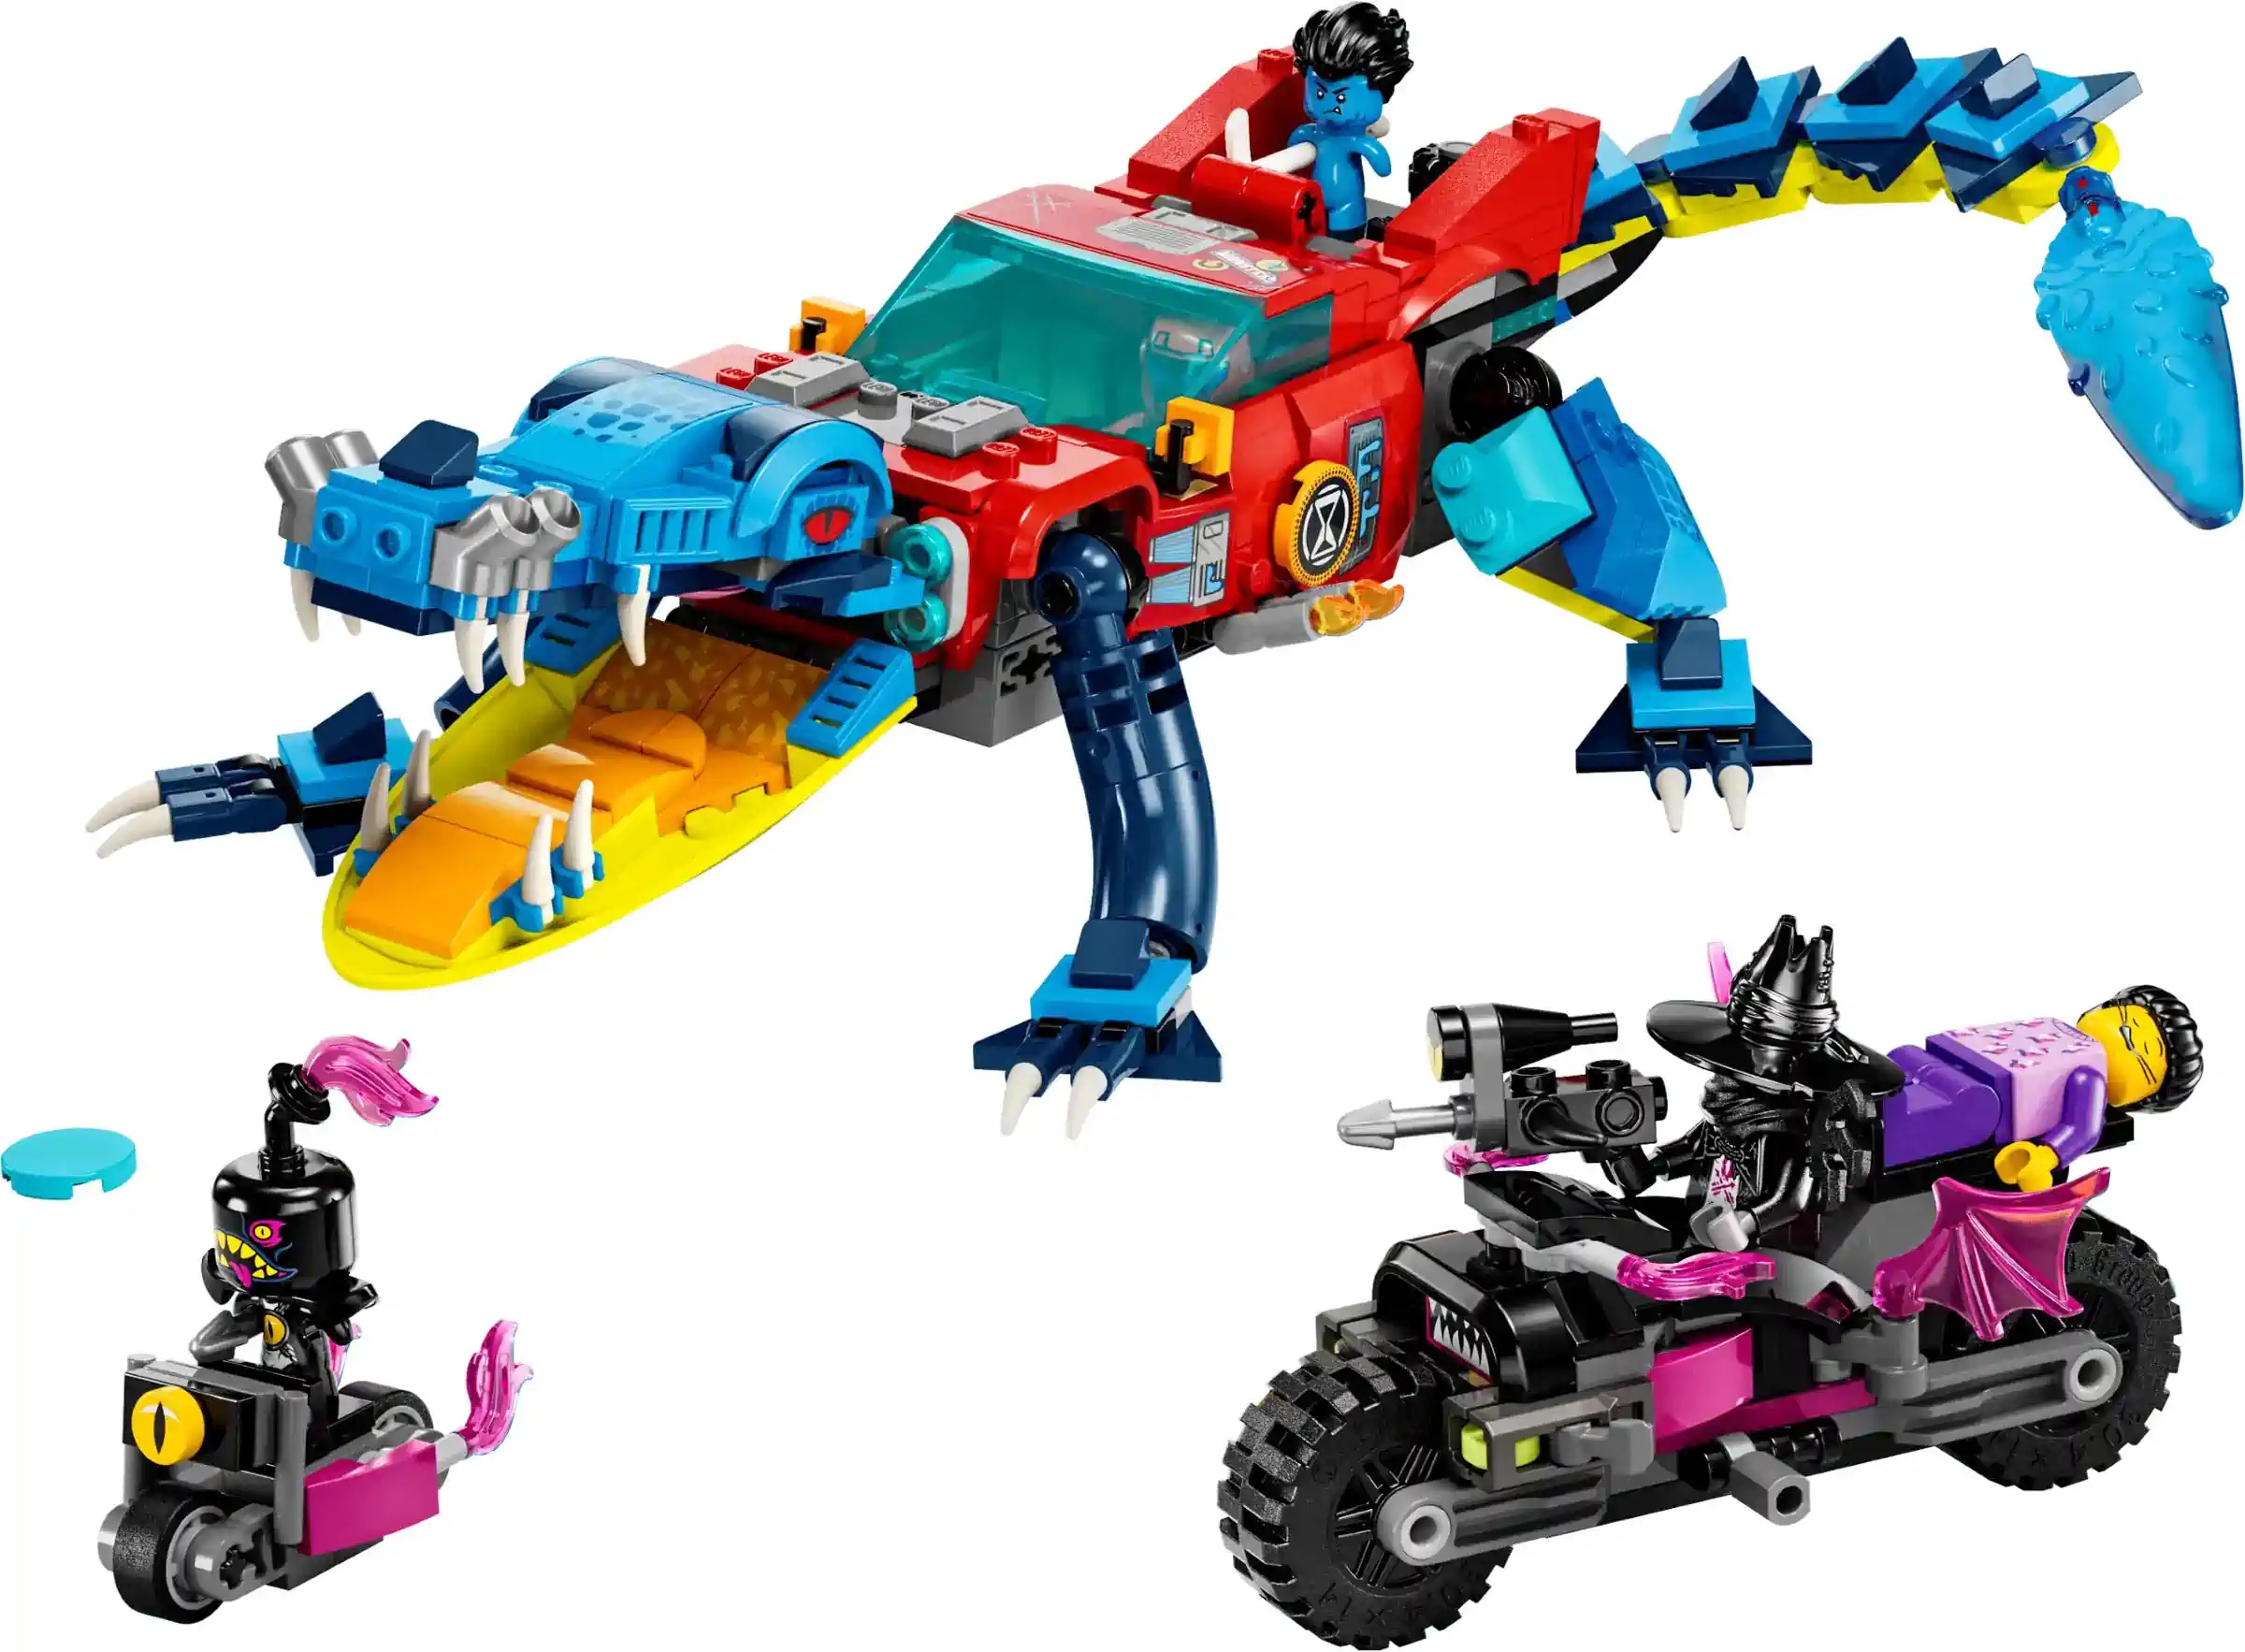 LEGO DREAMZzz Set Krokodilauto 71458